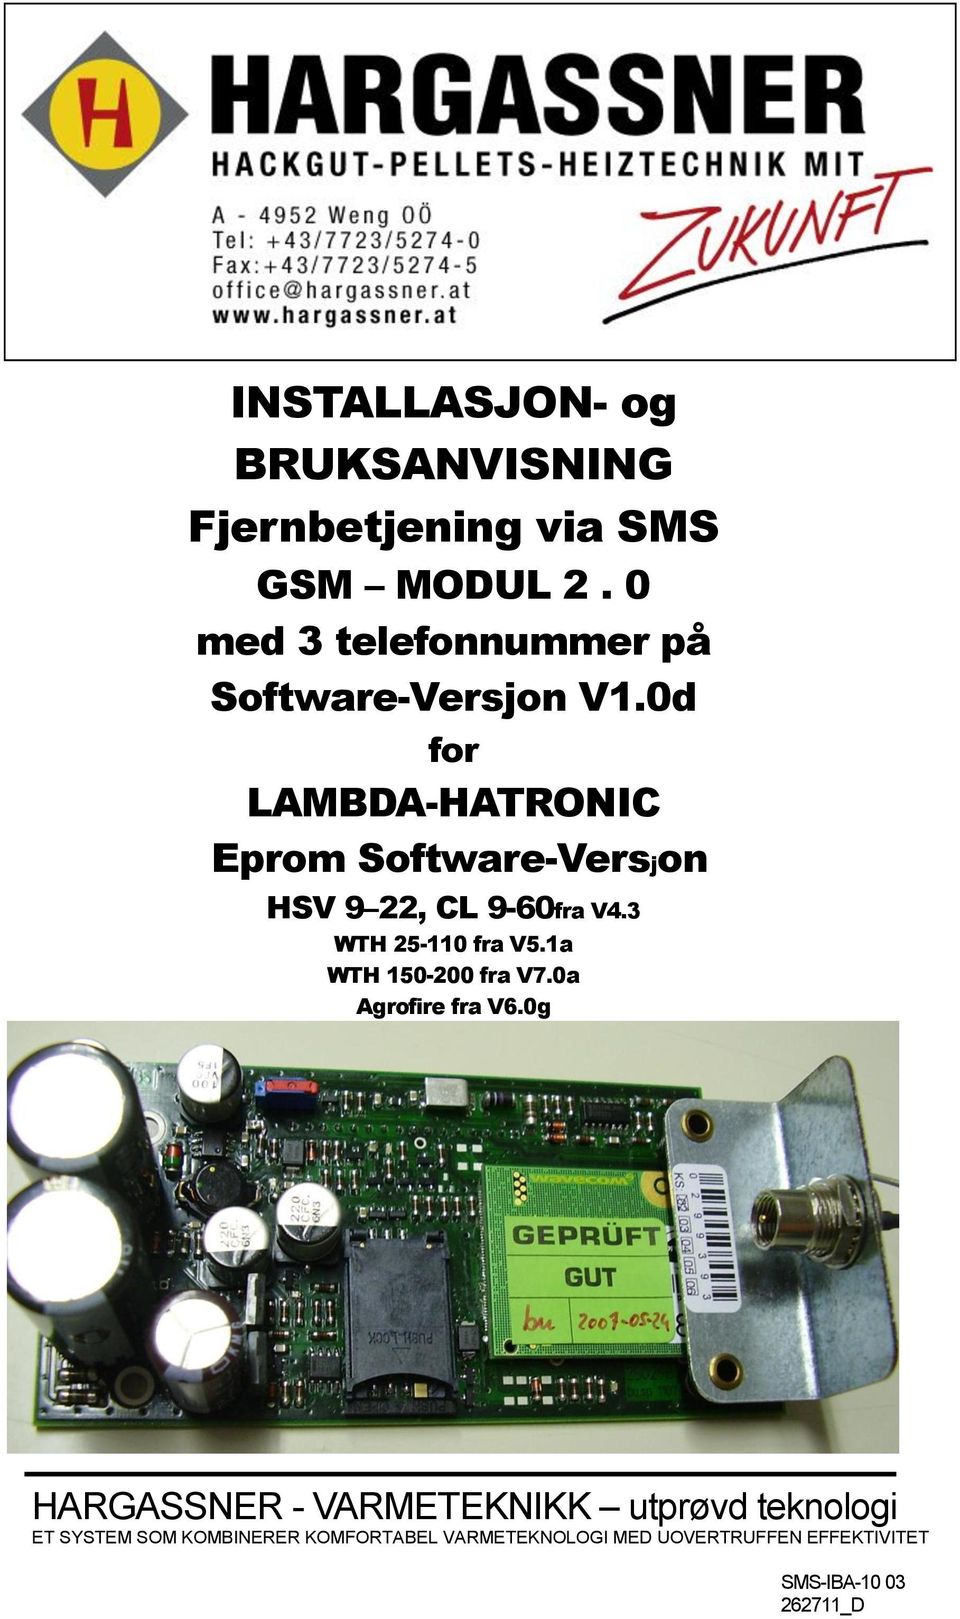 0d for LAMBDA-HATRONIC Eprom Software-Versjon HSV 9 22, CL 9-60fra V4.3 WTH 25-110 fra V5.